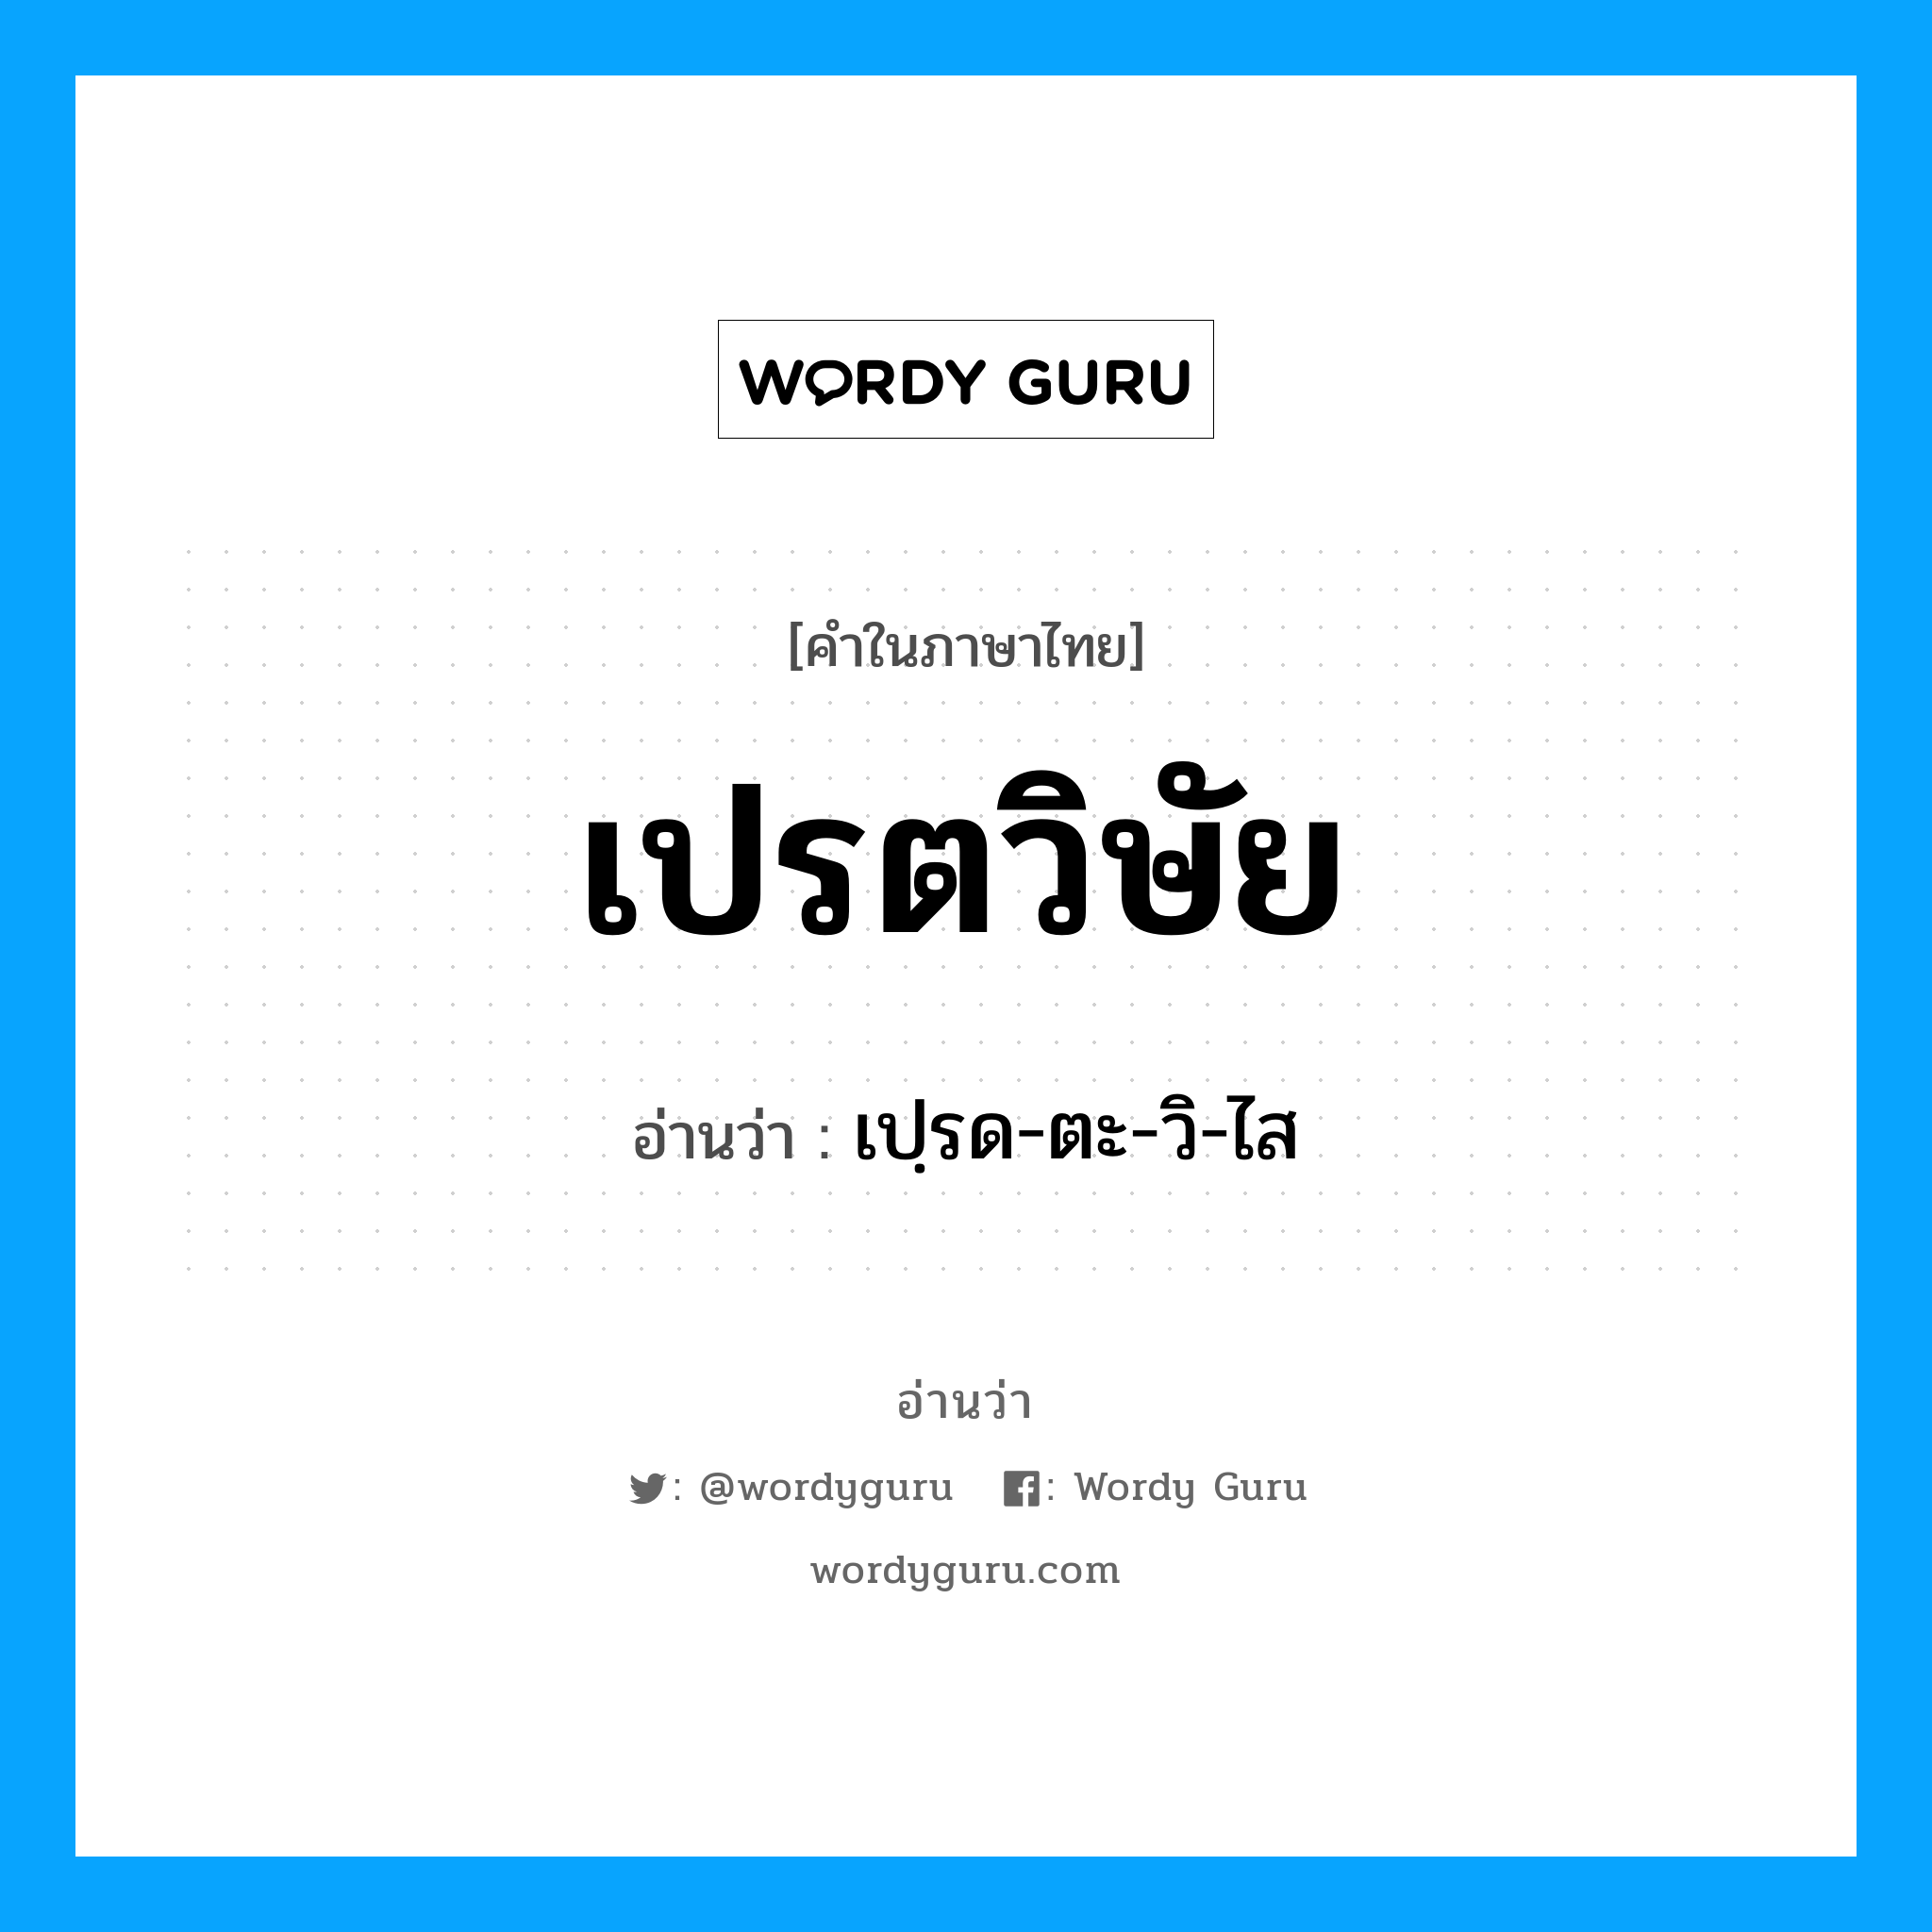 เปฺรด-ตะ-วิ-ไส เป็นคำอ่านของคำไหน?, คำในภาษาไทย เปฺรด-ตะ-วิ-ไส อ่านว่า เปรตวิษัย